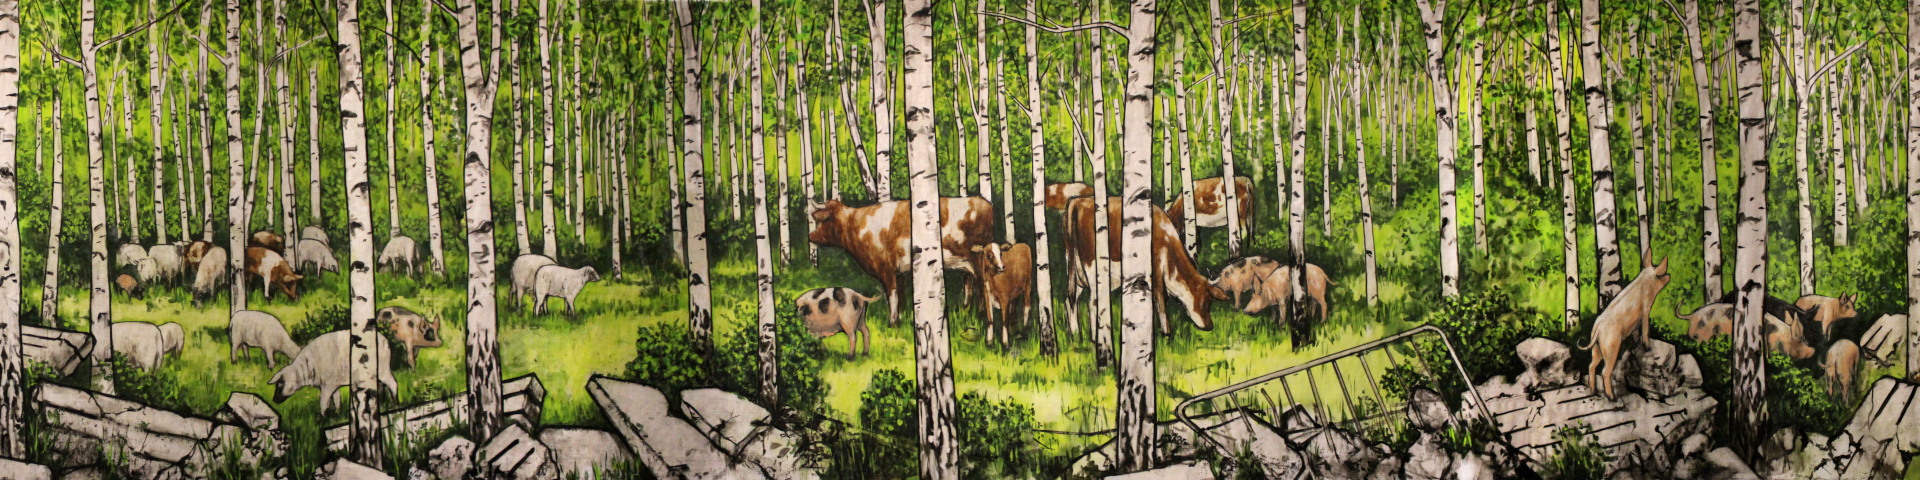 Gemälde: Wiese von Hartmut Kiewert – Tiere im Wald zwischen Ruinen